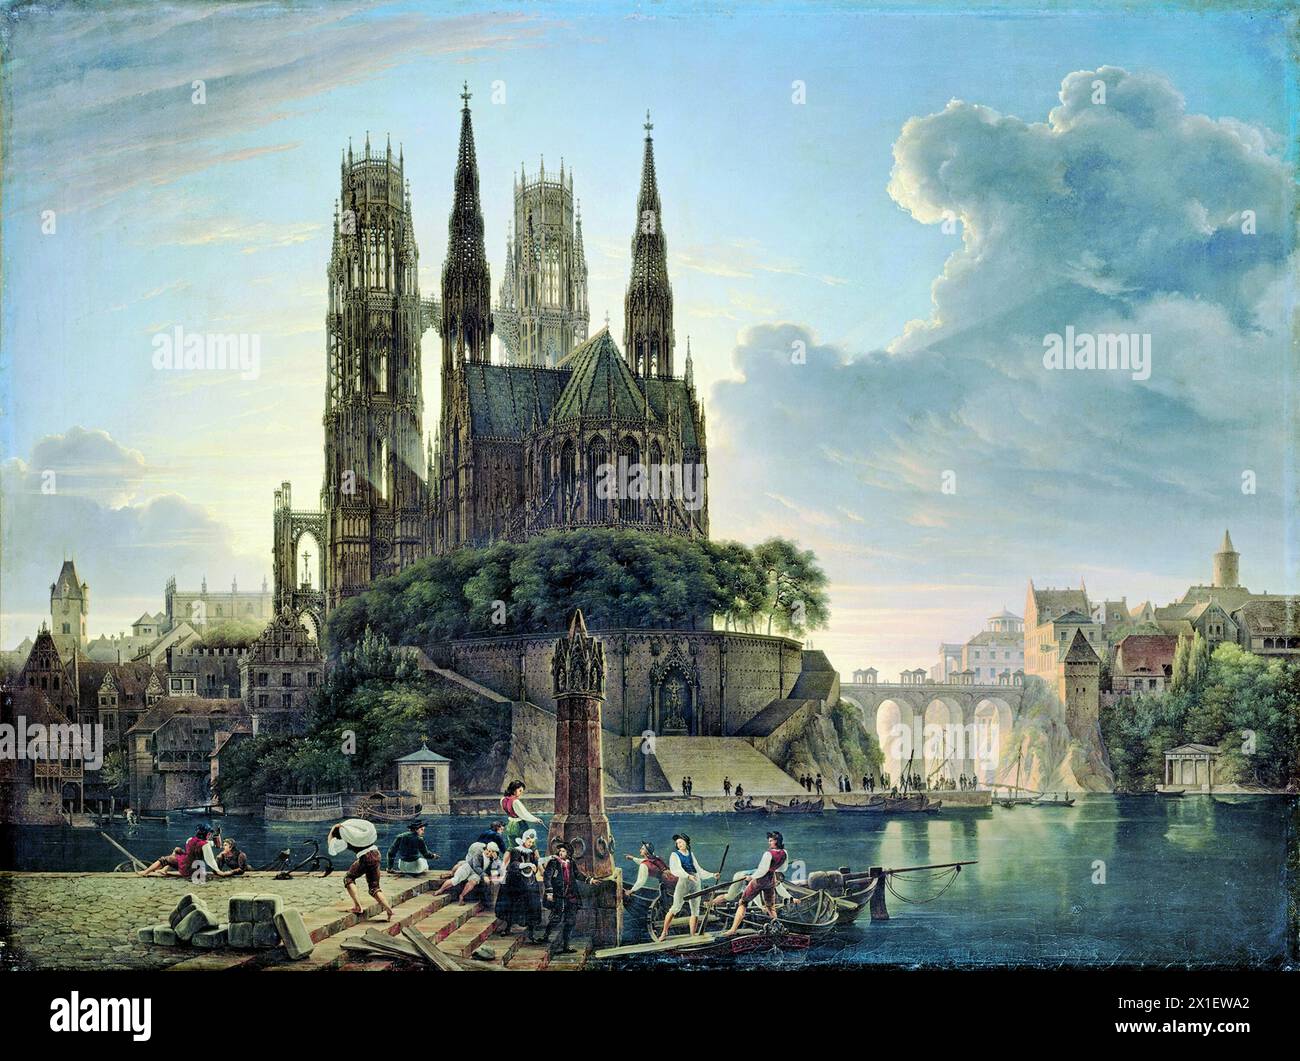 Cattedrale gotica sul fiume (tedesco - Gotischer Dom am Wasser) è un dipinto del 1813 dell'artista e architetto tedesco Karl Friedrich Schinkel. Mostra un'immaginaria cattedrale gotica su un'isola in un fiume - Schinkel in seguito divenne un noto sostenitore dell'architettura neogotica. Foto Stock